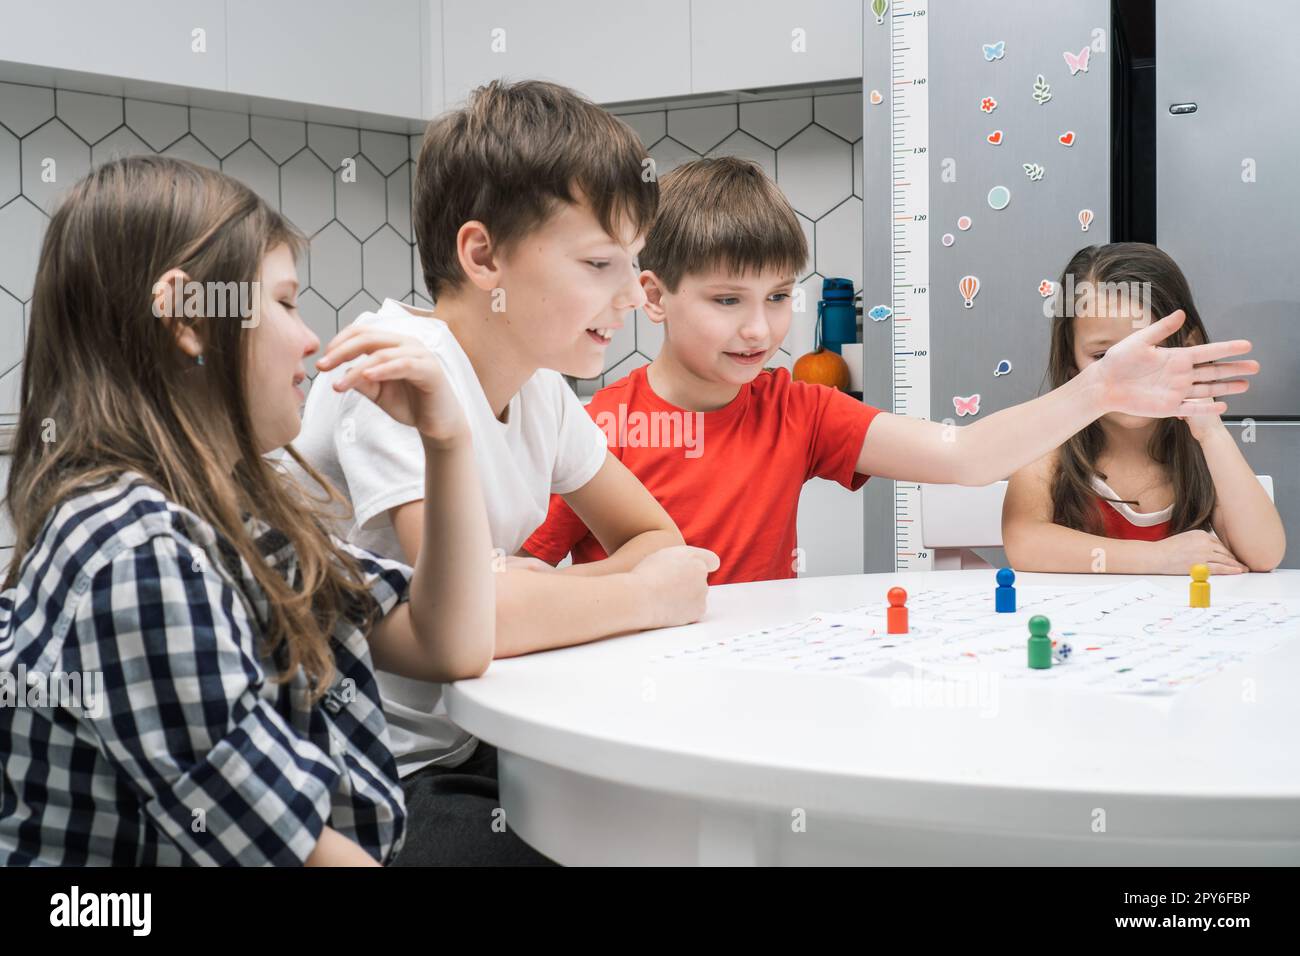 Des amis de petite école joyeux jouent à un jeu de société sur une carte papier avec des dés et des jetons à la table, vue latérale. Jeu de table intéressant Banque D'Images